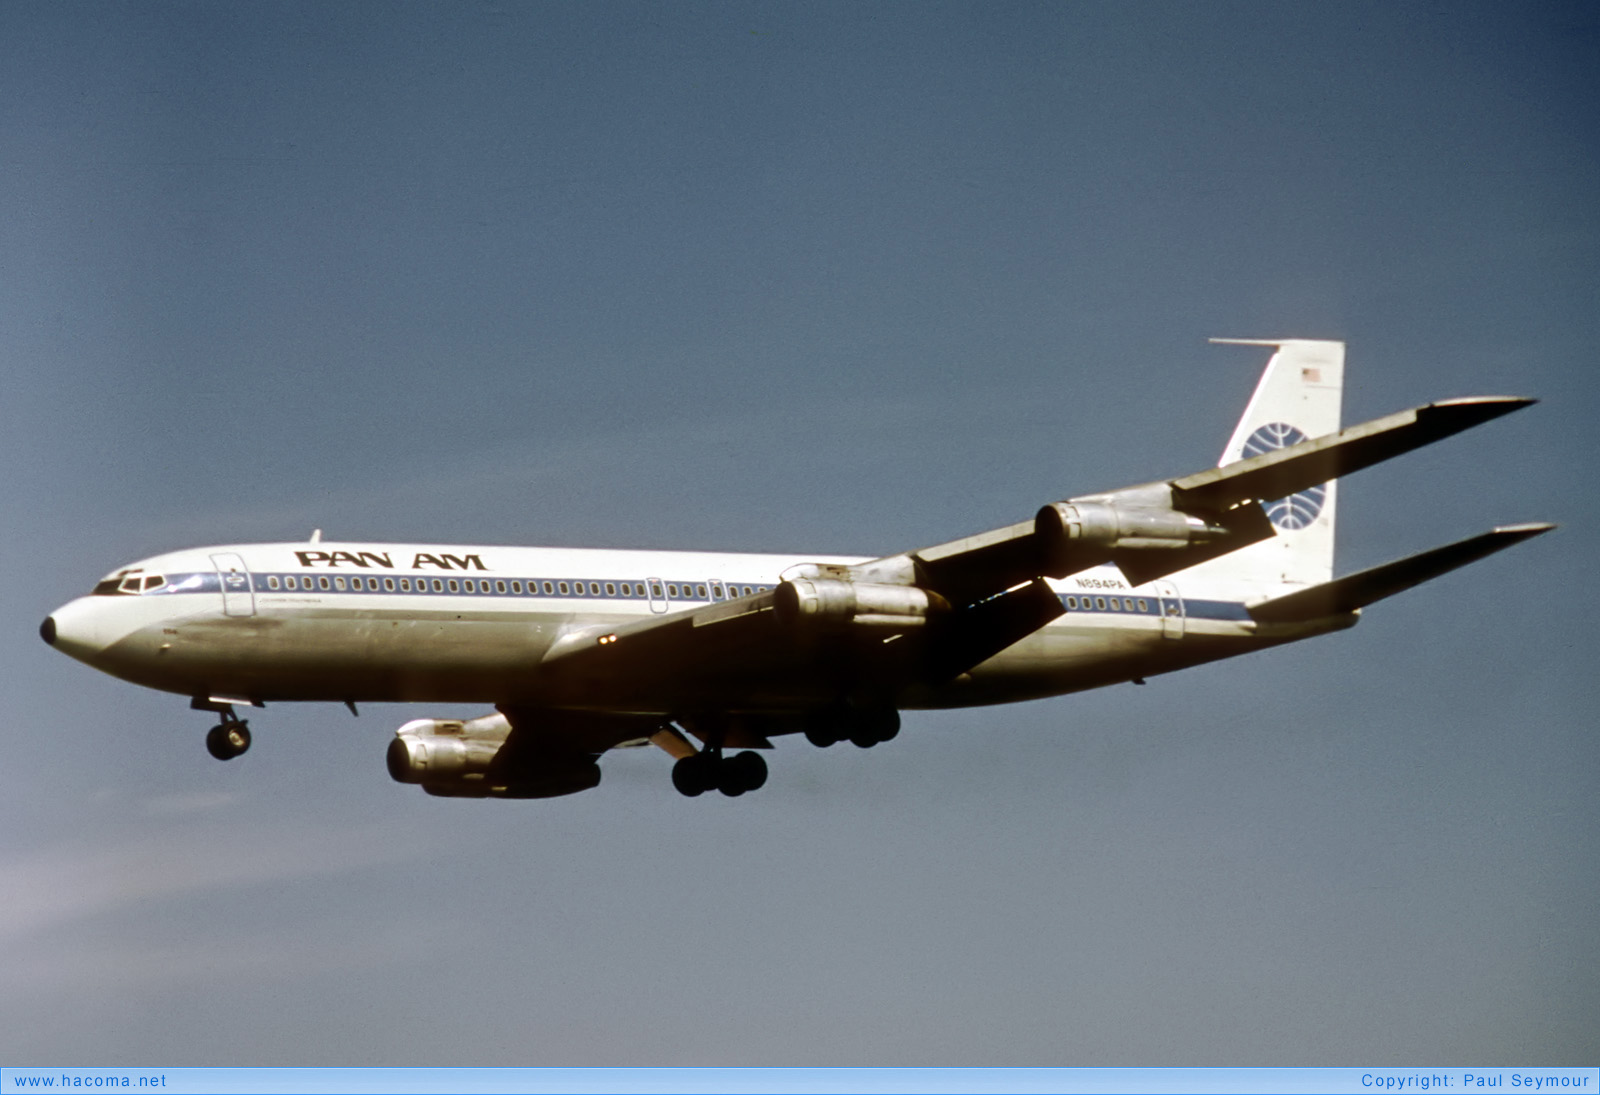 Photo of N894PA - Pan Am Clipper Polynesian Clipper - London Heathrow Airport - Sep 4, 1977